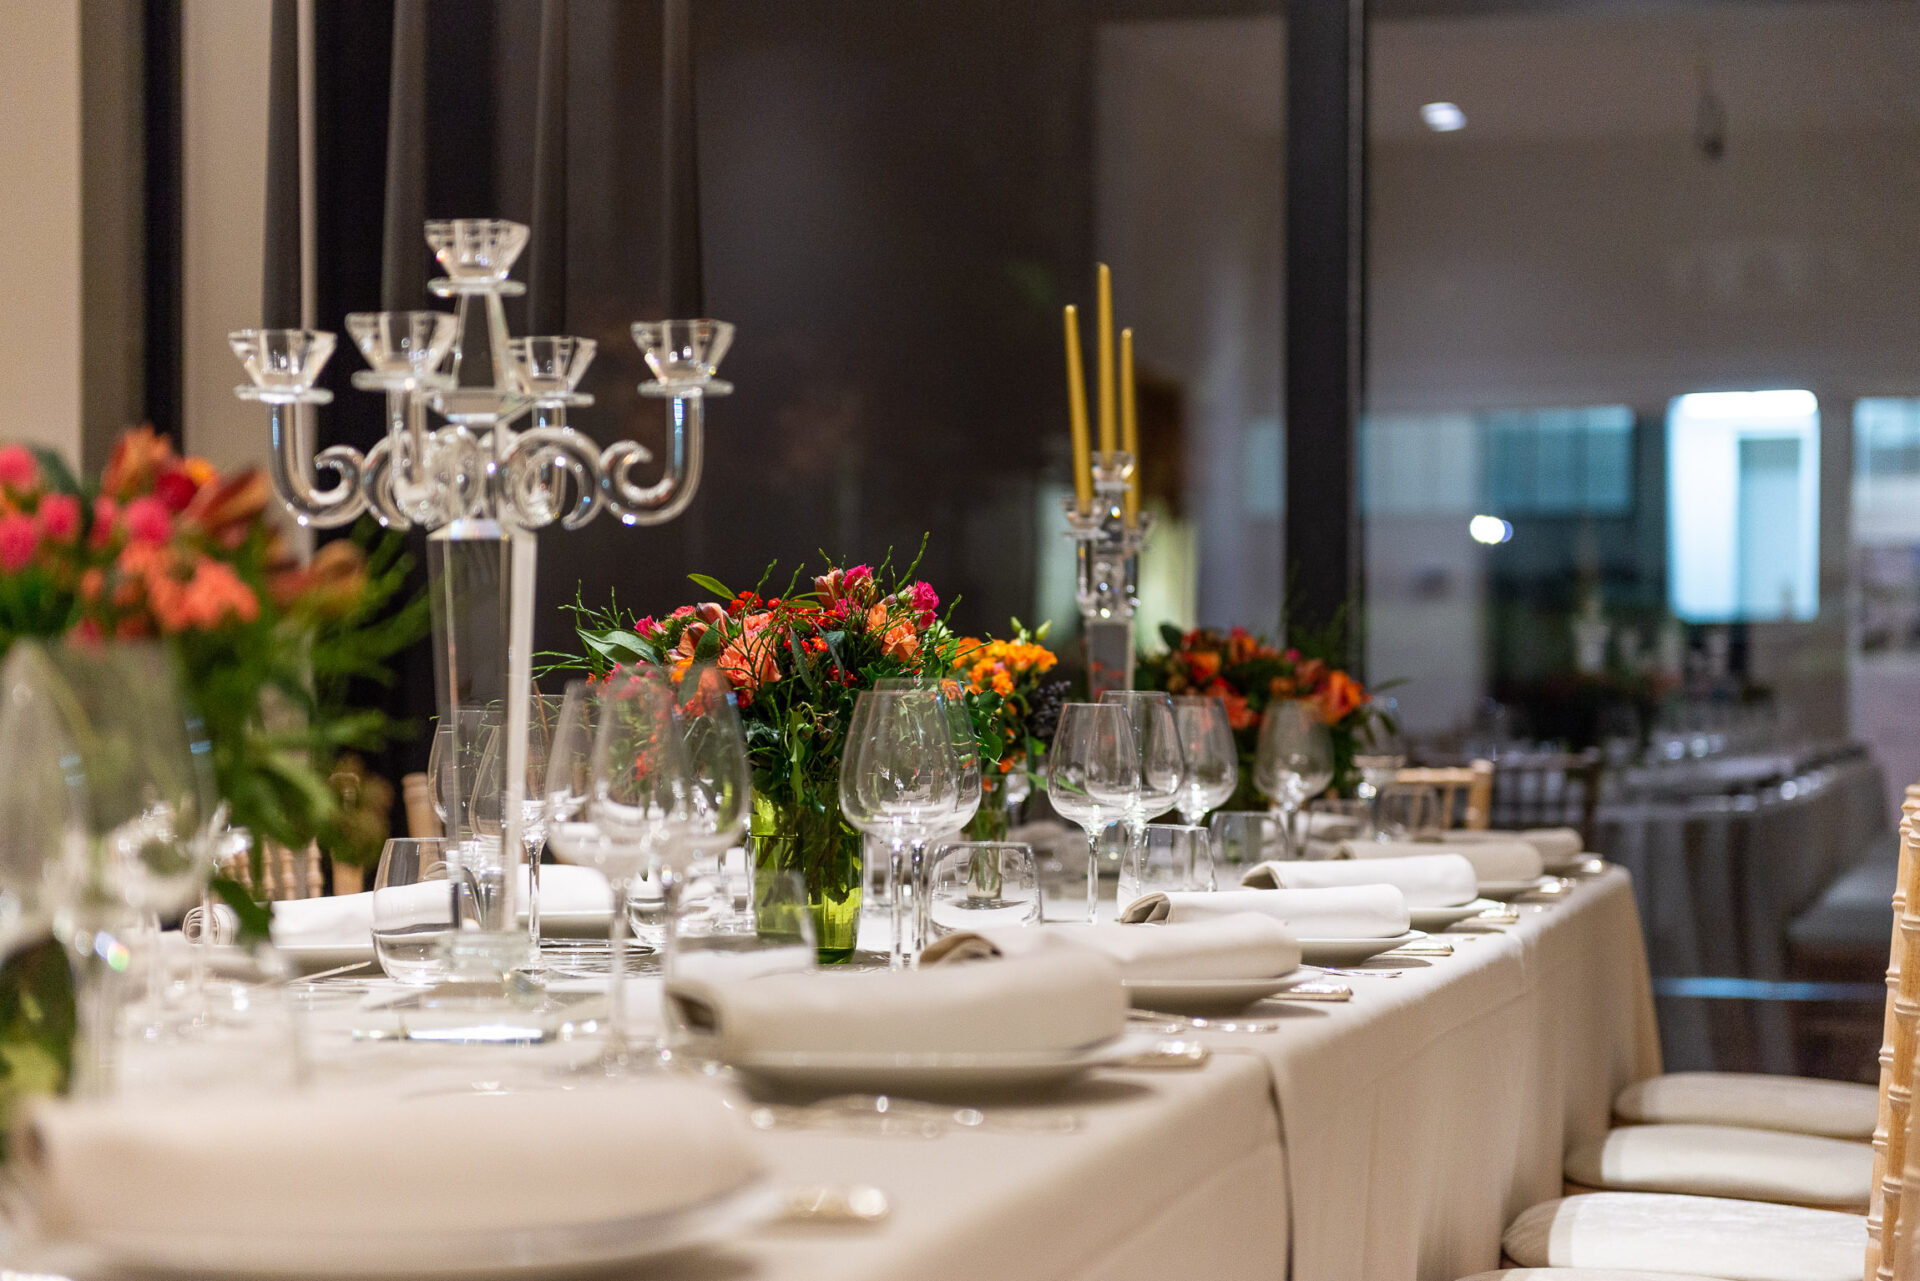 Prachtige bloemendecoratie door Nouveau en een betoverende tafeldecoratie door Maison Demeuldre voor deze speciale diner georganiseerd door Belgium Sotheby's International Realty.